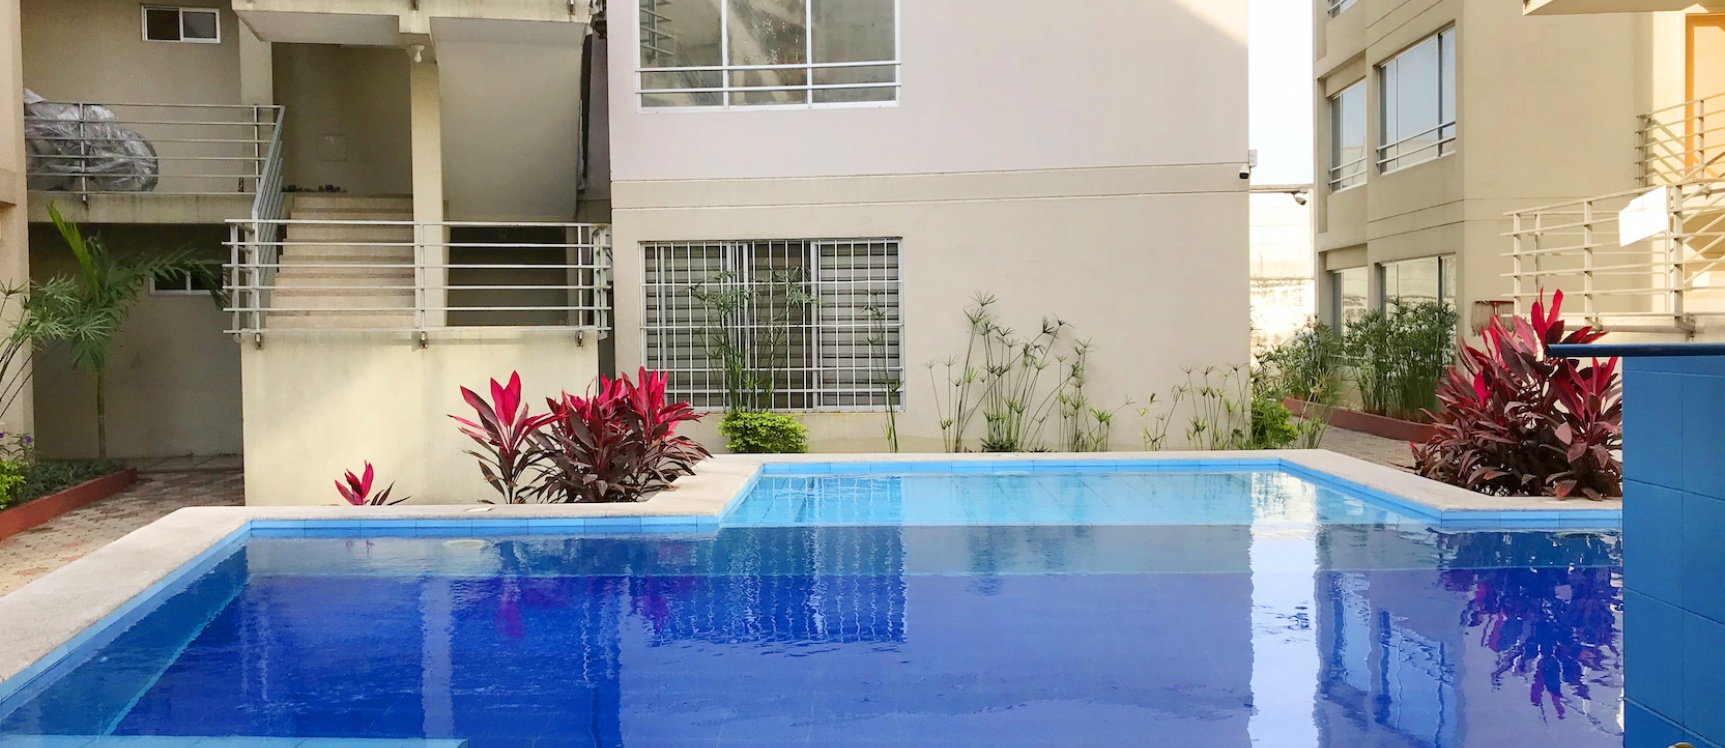 GeoBienes - Departamento en venta en la urbanización San Felipe, Norte de Guayaquil - Plusvalia Guayaquil Casas de venta y alquiler Inmobiliaria Ecuador